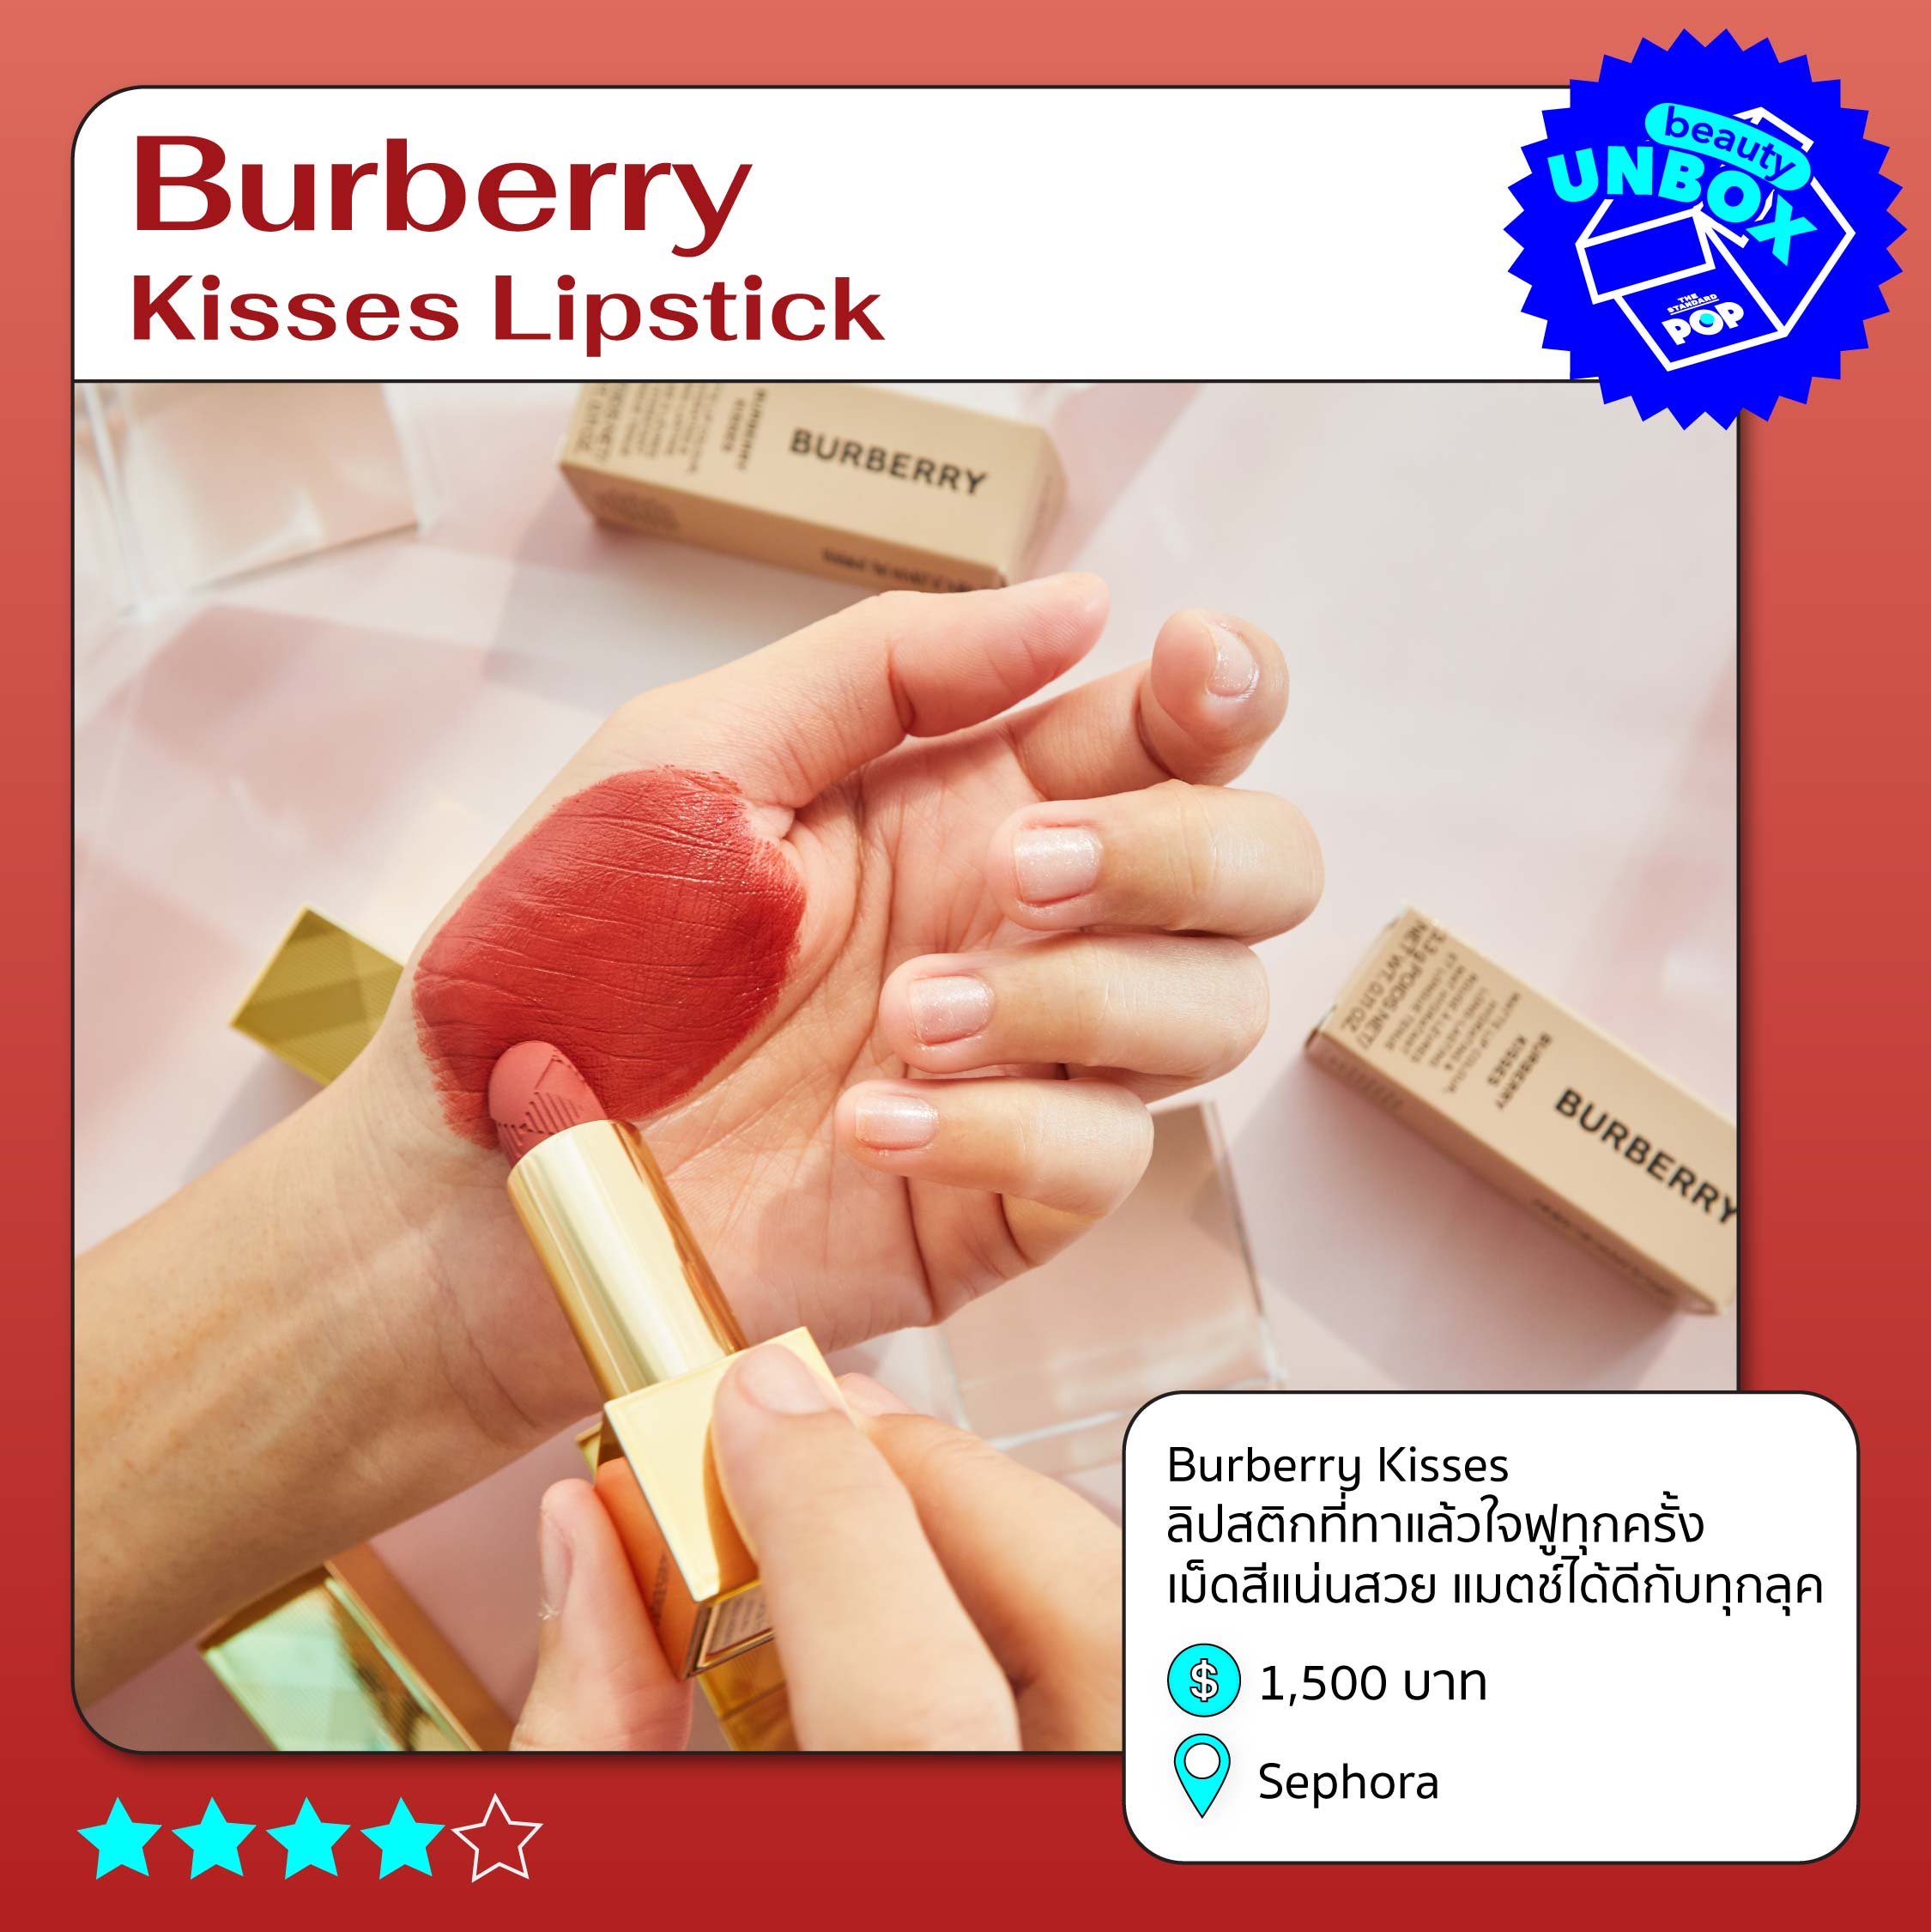 Burberry Kisses LipstickBurberry Kisses Lipstick